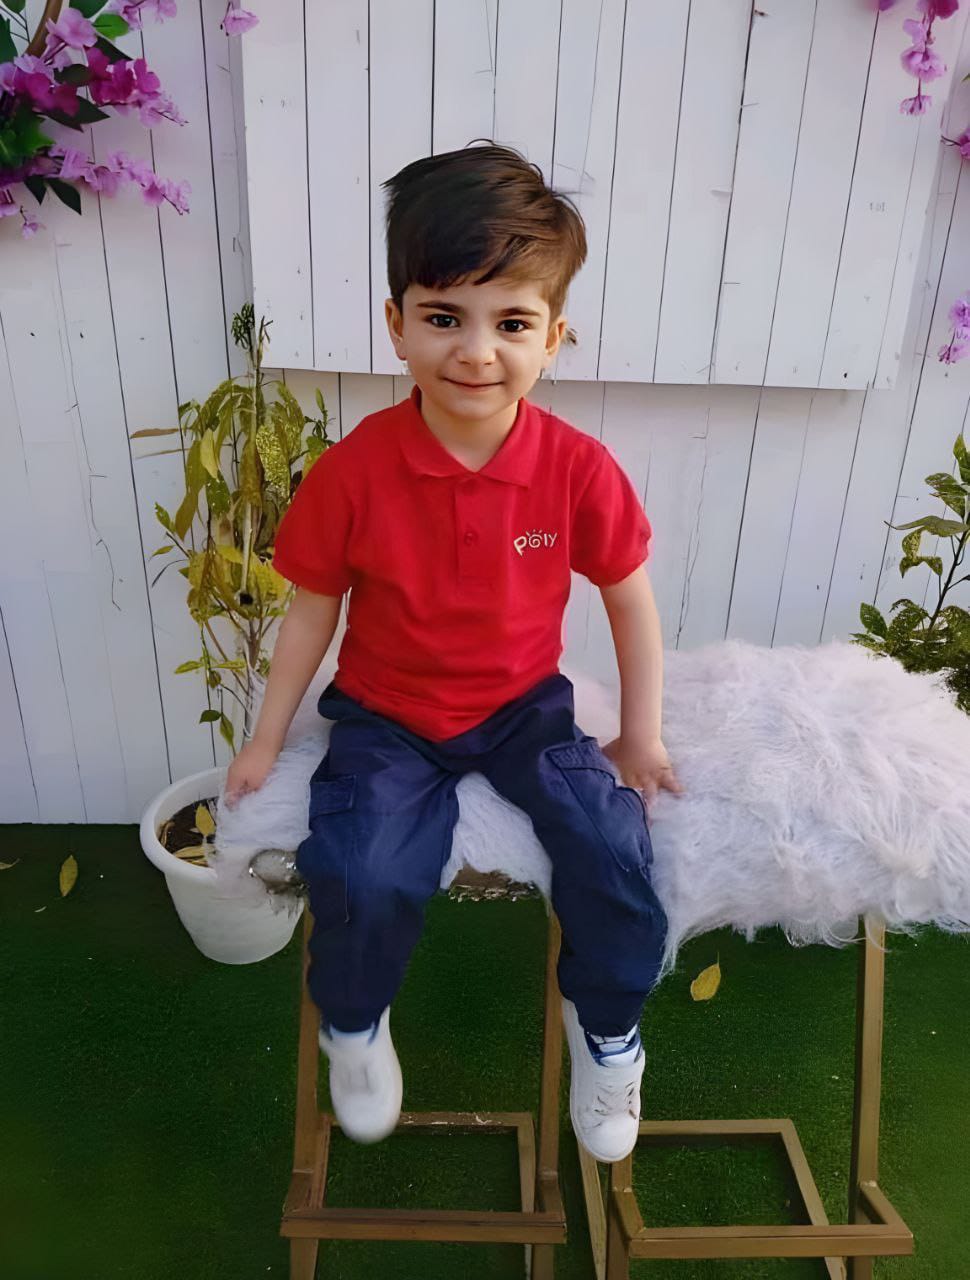 الطفل تميم داوود توفي في قطاع غزة نتيجة نوبة هلع من أصوات الانفجارات، 10 أيار/مايو 2023 